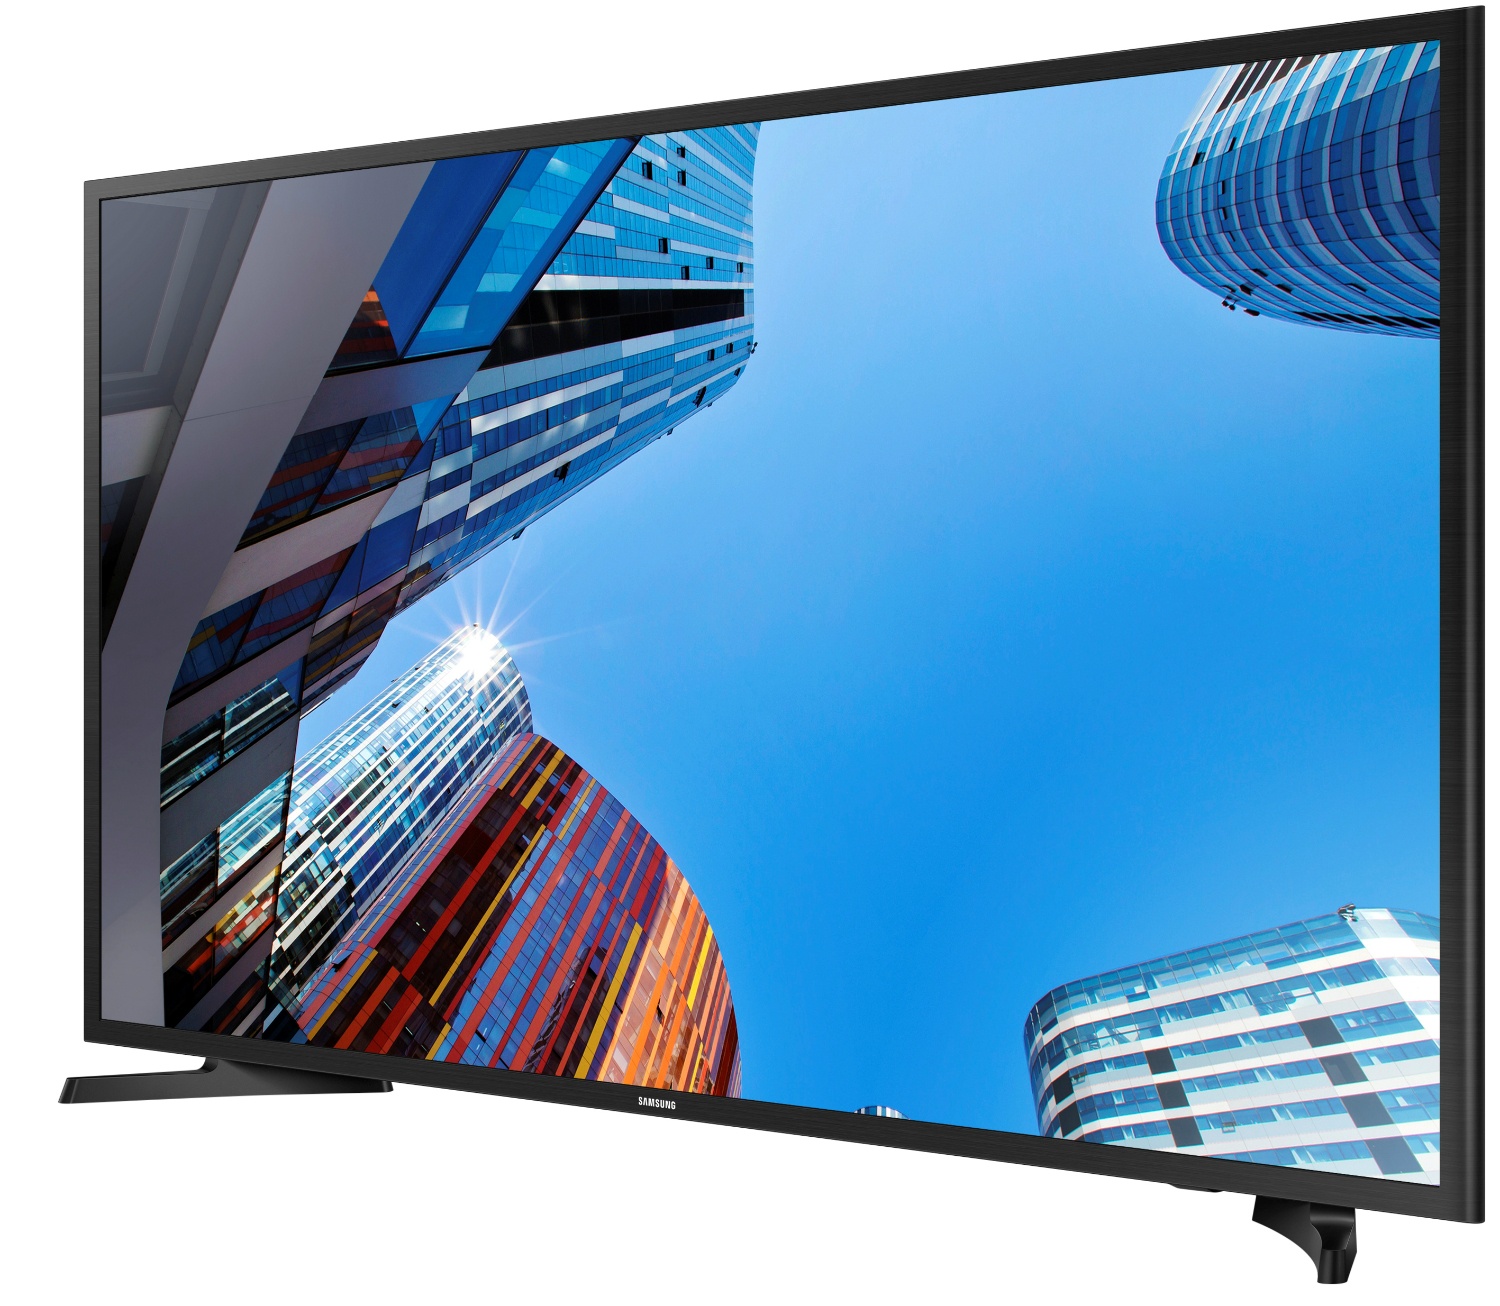 Купить телевизор в магазине самсунг. Телевизор Samsung ue40m5000au. Ue40m5000au.